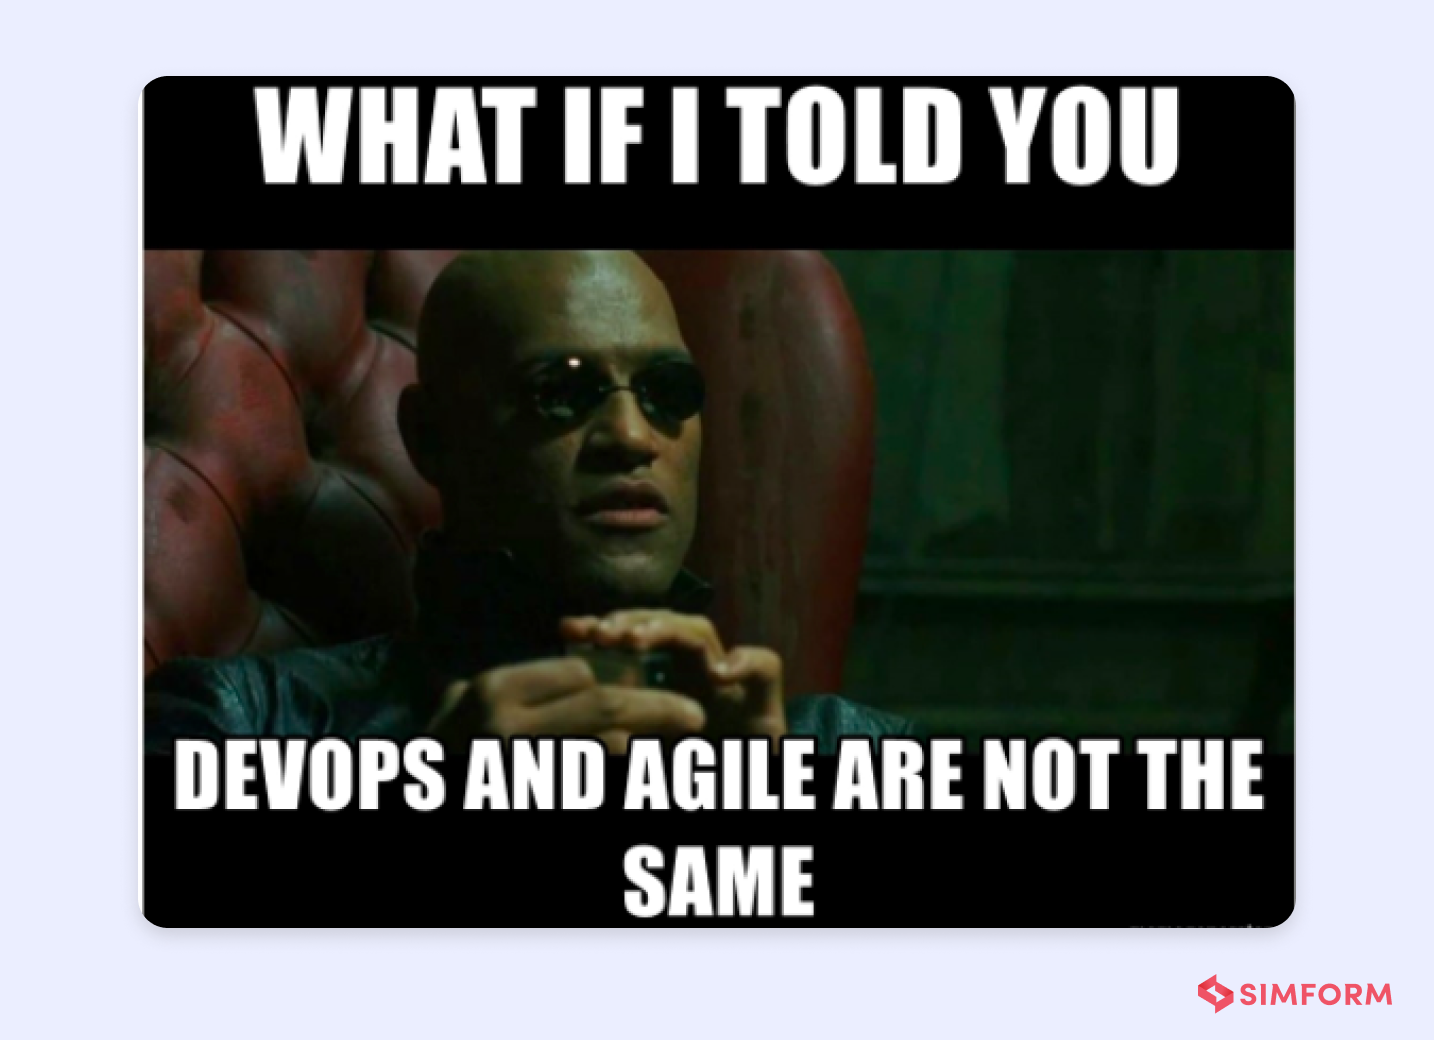 Agile vs DevOps